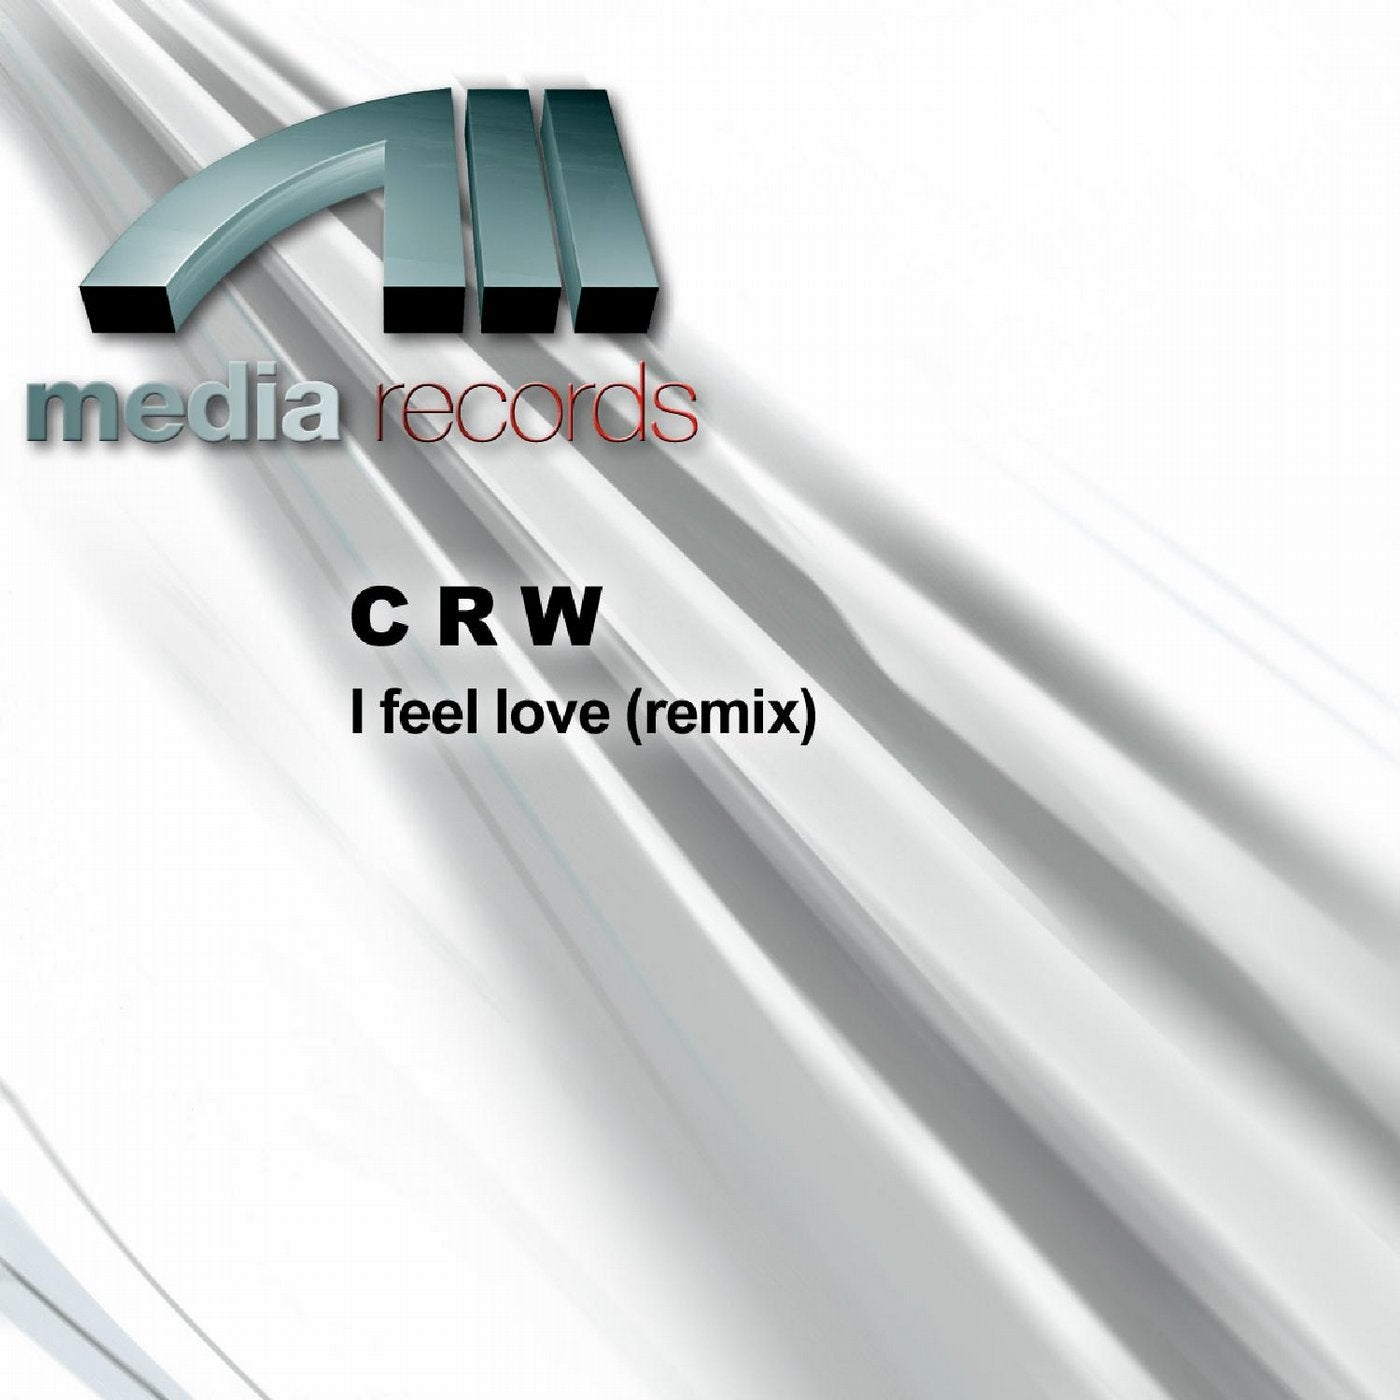 I feel love (remix)